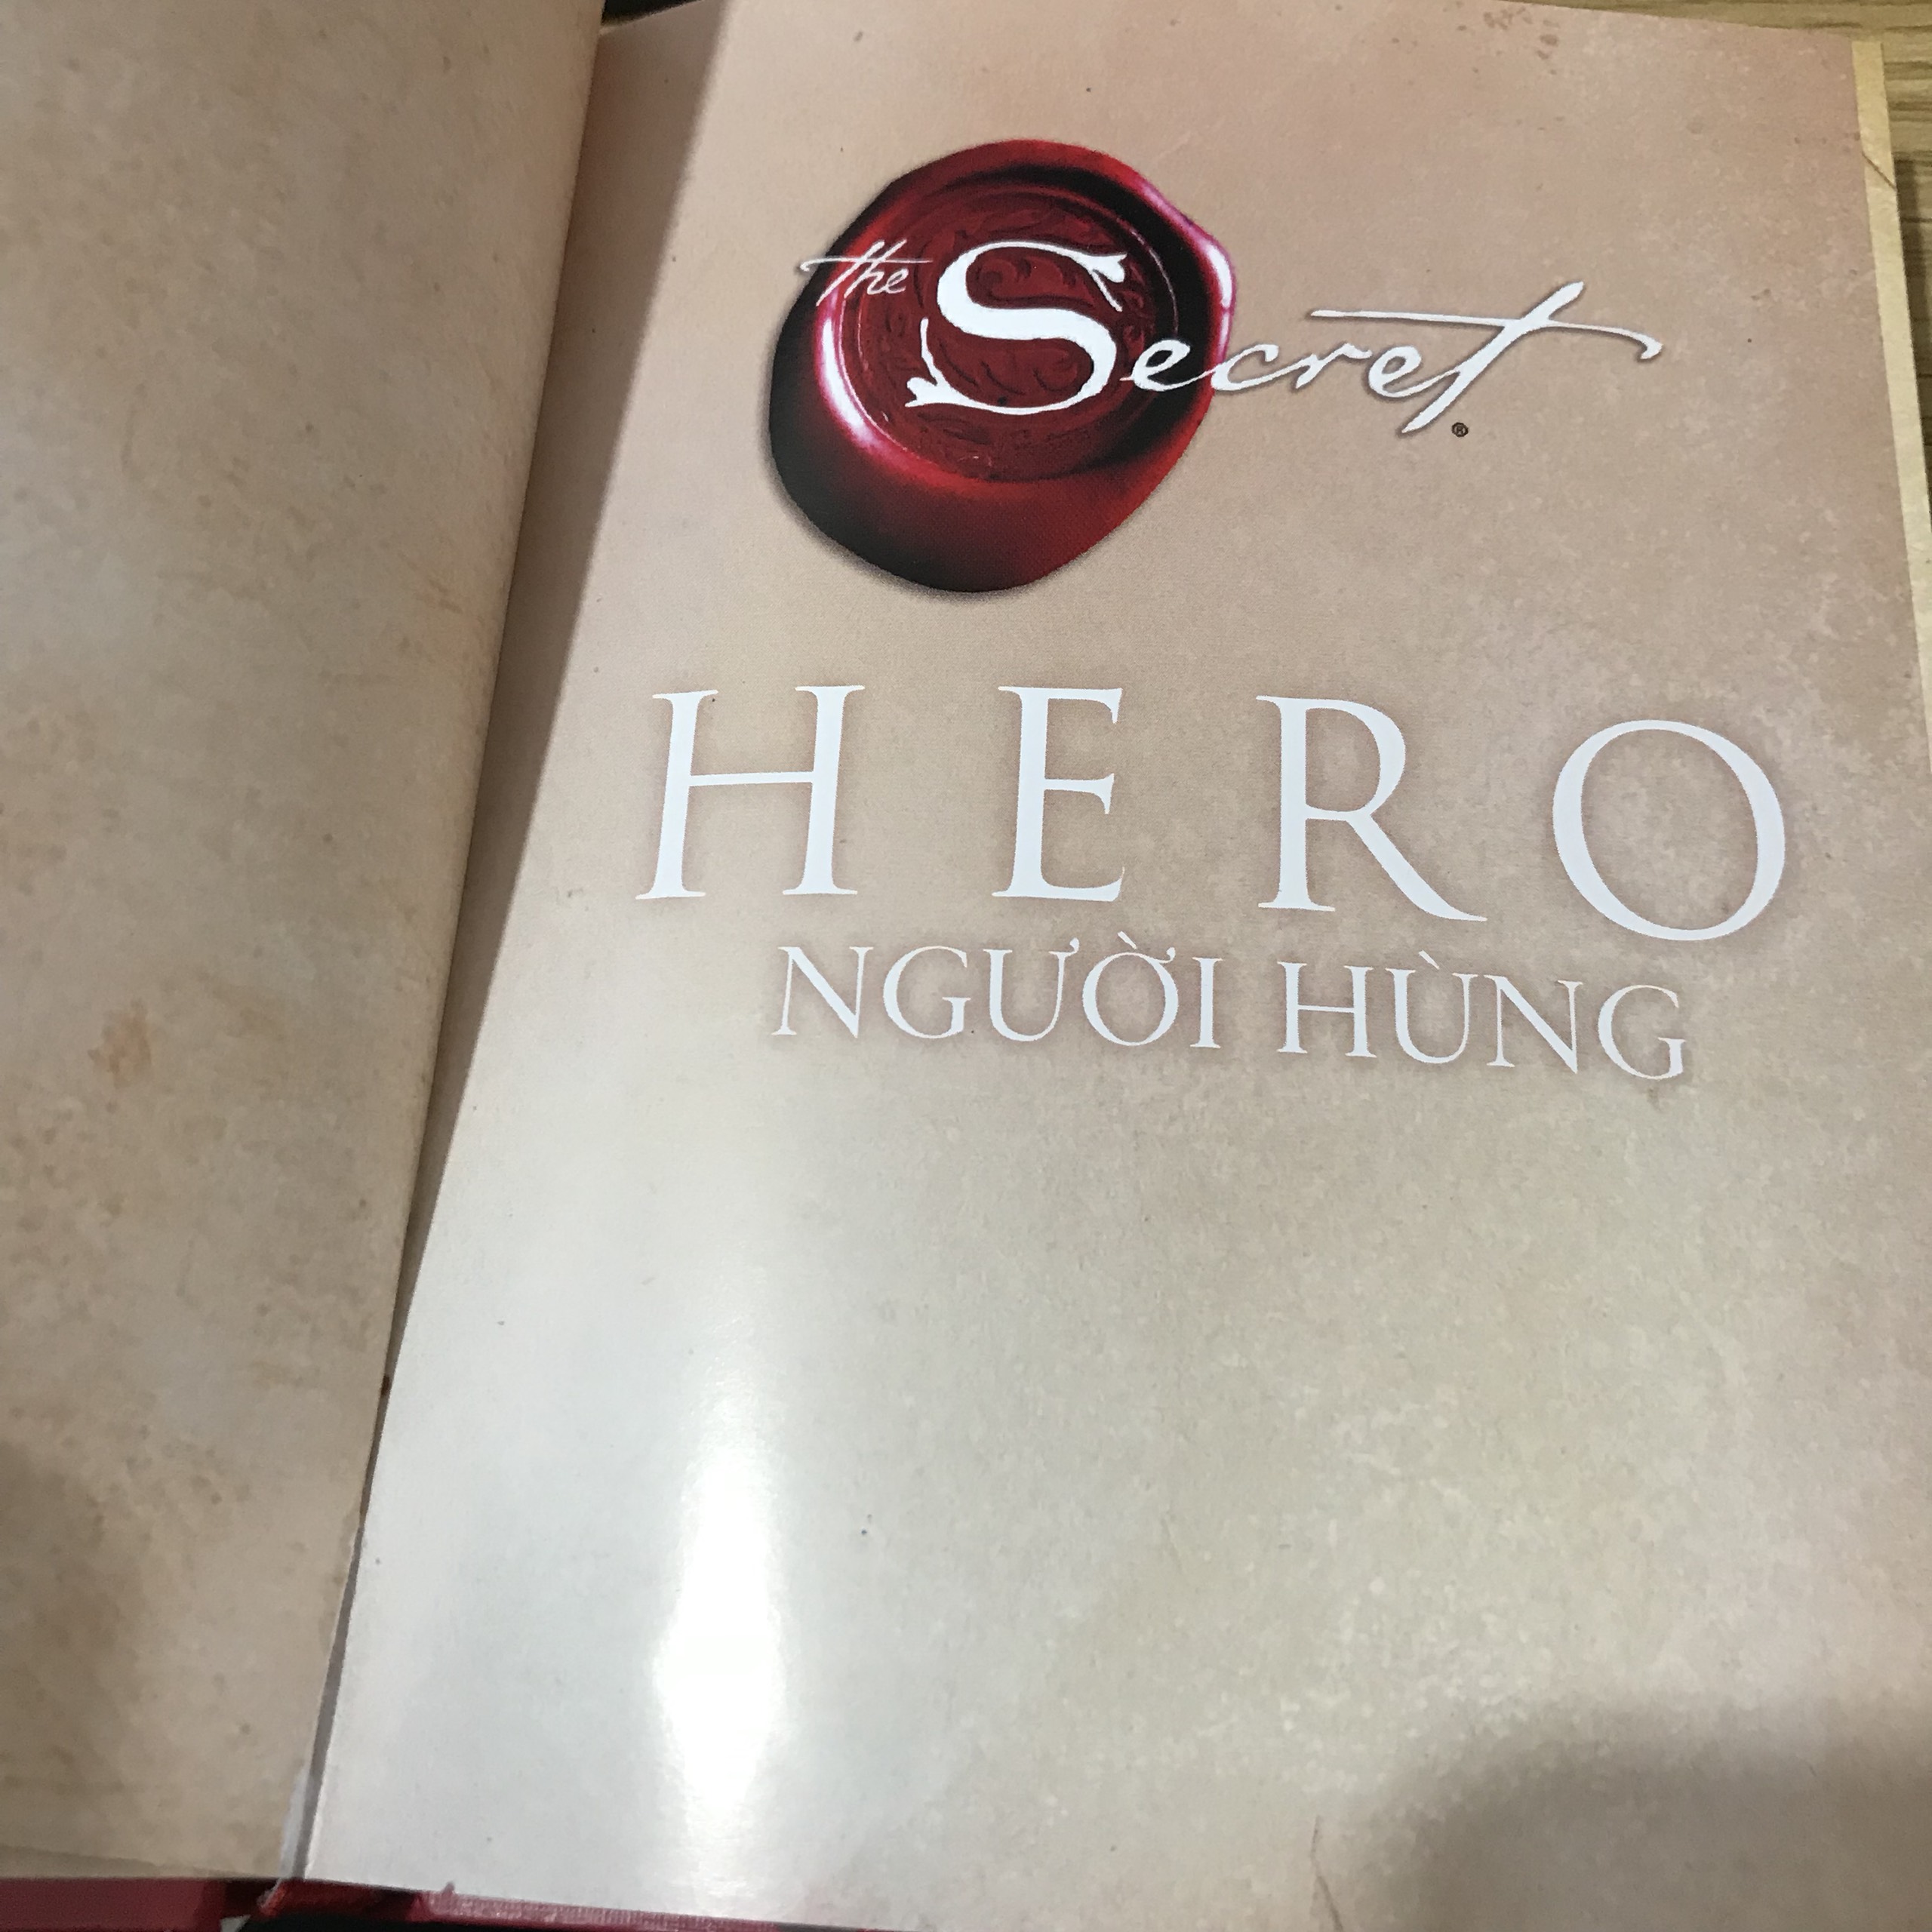 Combo 3 cuốn The Secret , Hero Người Hùng + Secret Bí Mật + Magic Phép Màu